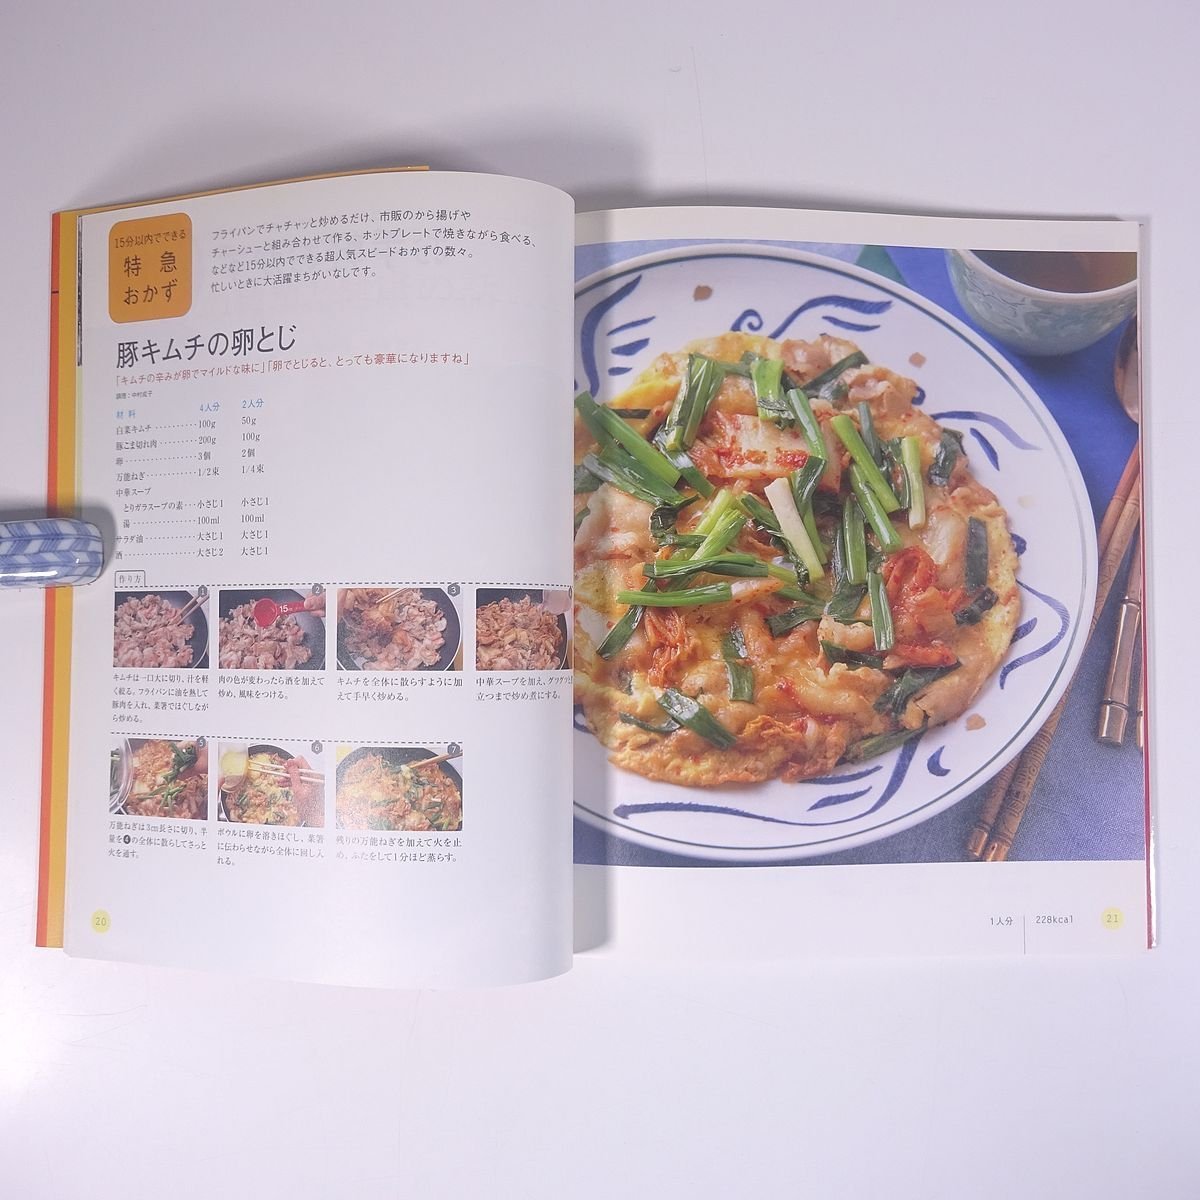 キムチのおかず 読者が選んだ人気レシピ Vol.8 レタスクラブ 2001 大型本 料理 献立 レシピ 家庭料理_画像9